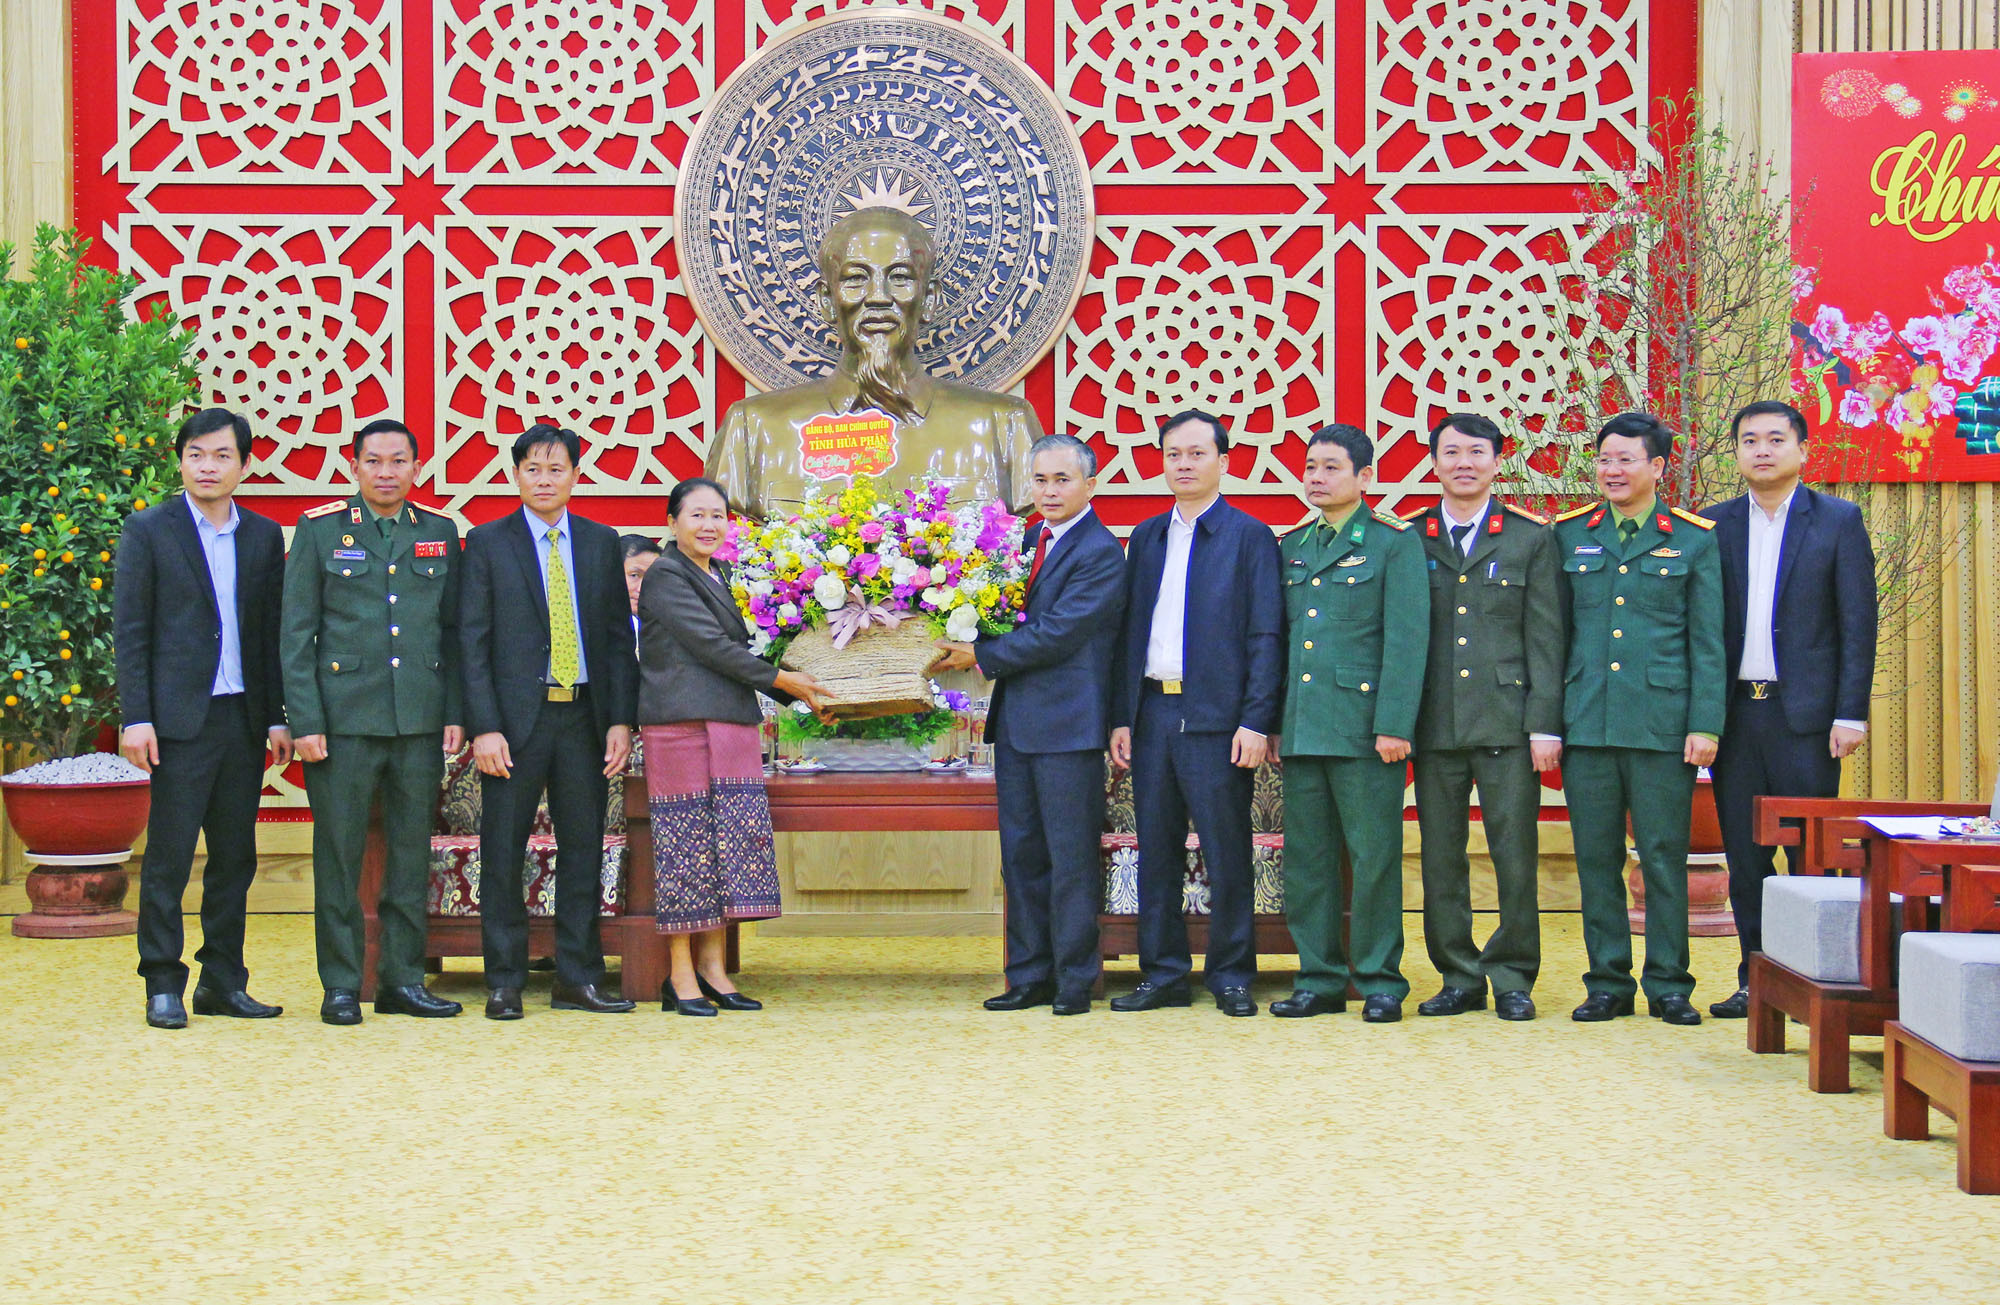 Đoàn công tác tỉnh Hủa Phăn trao tặng lẵng hoa chúc tết tỉnh Nghệ An. Ảnh: Thanh Quỳnh